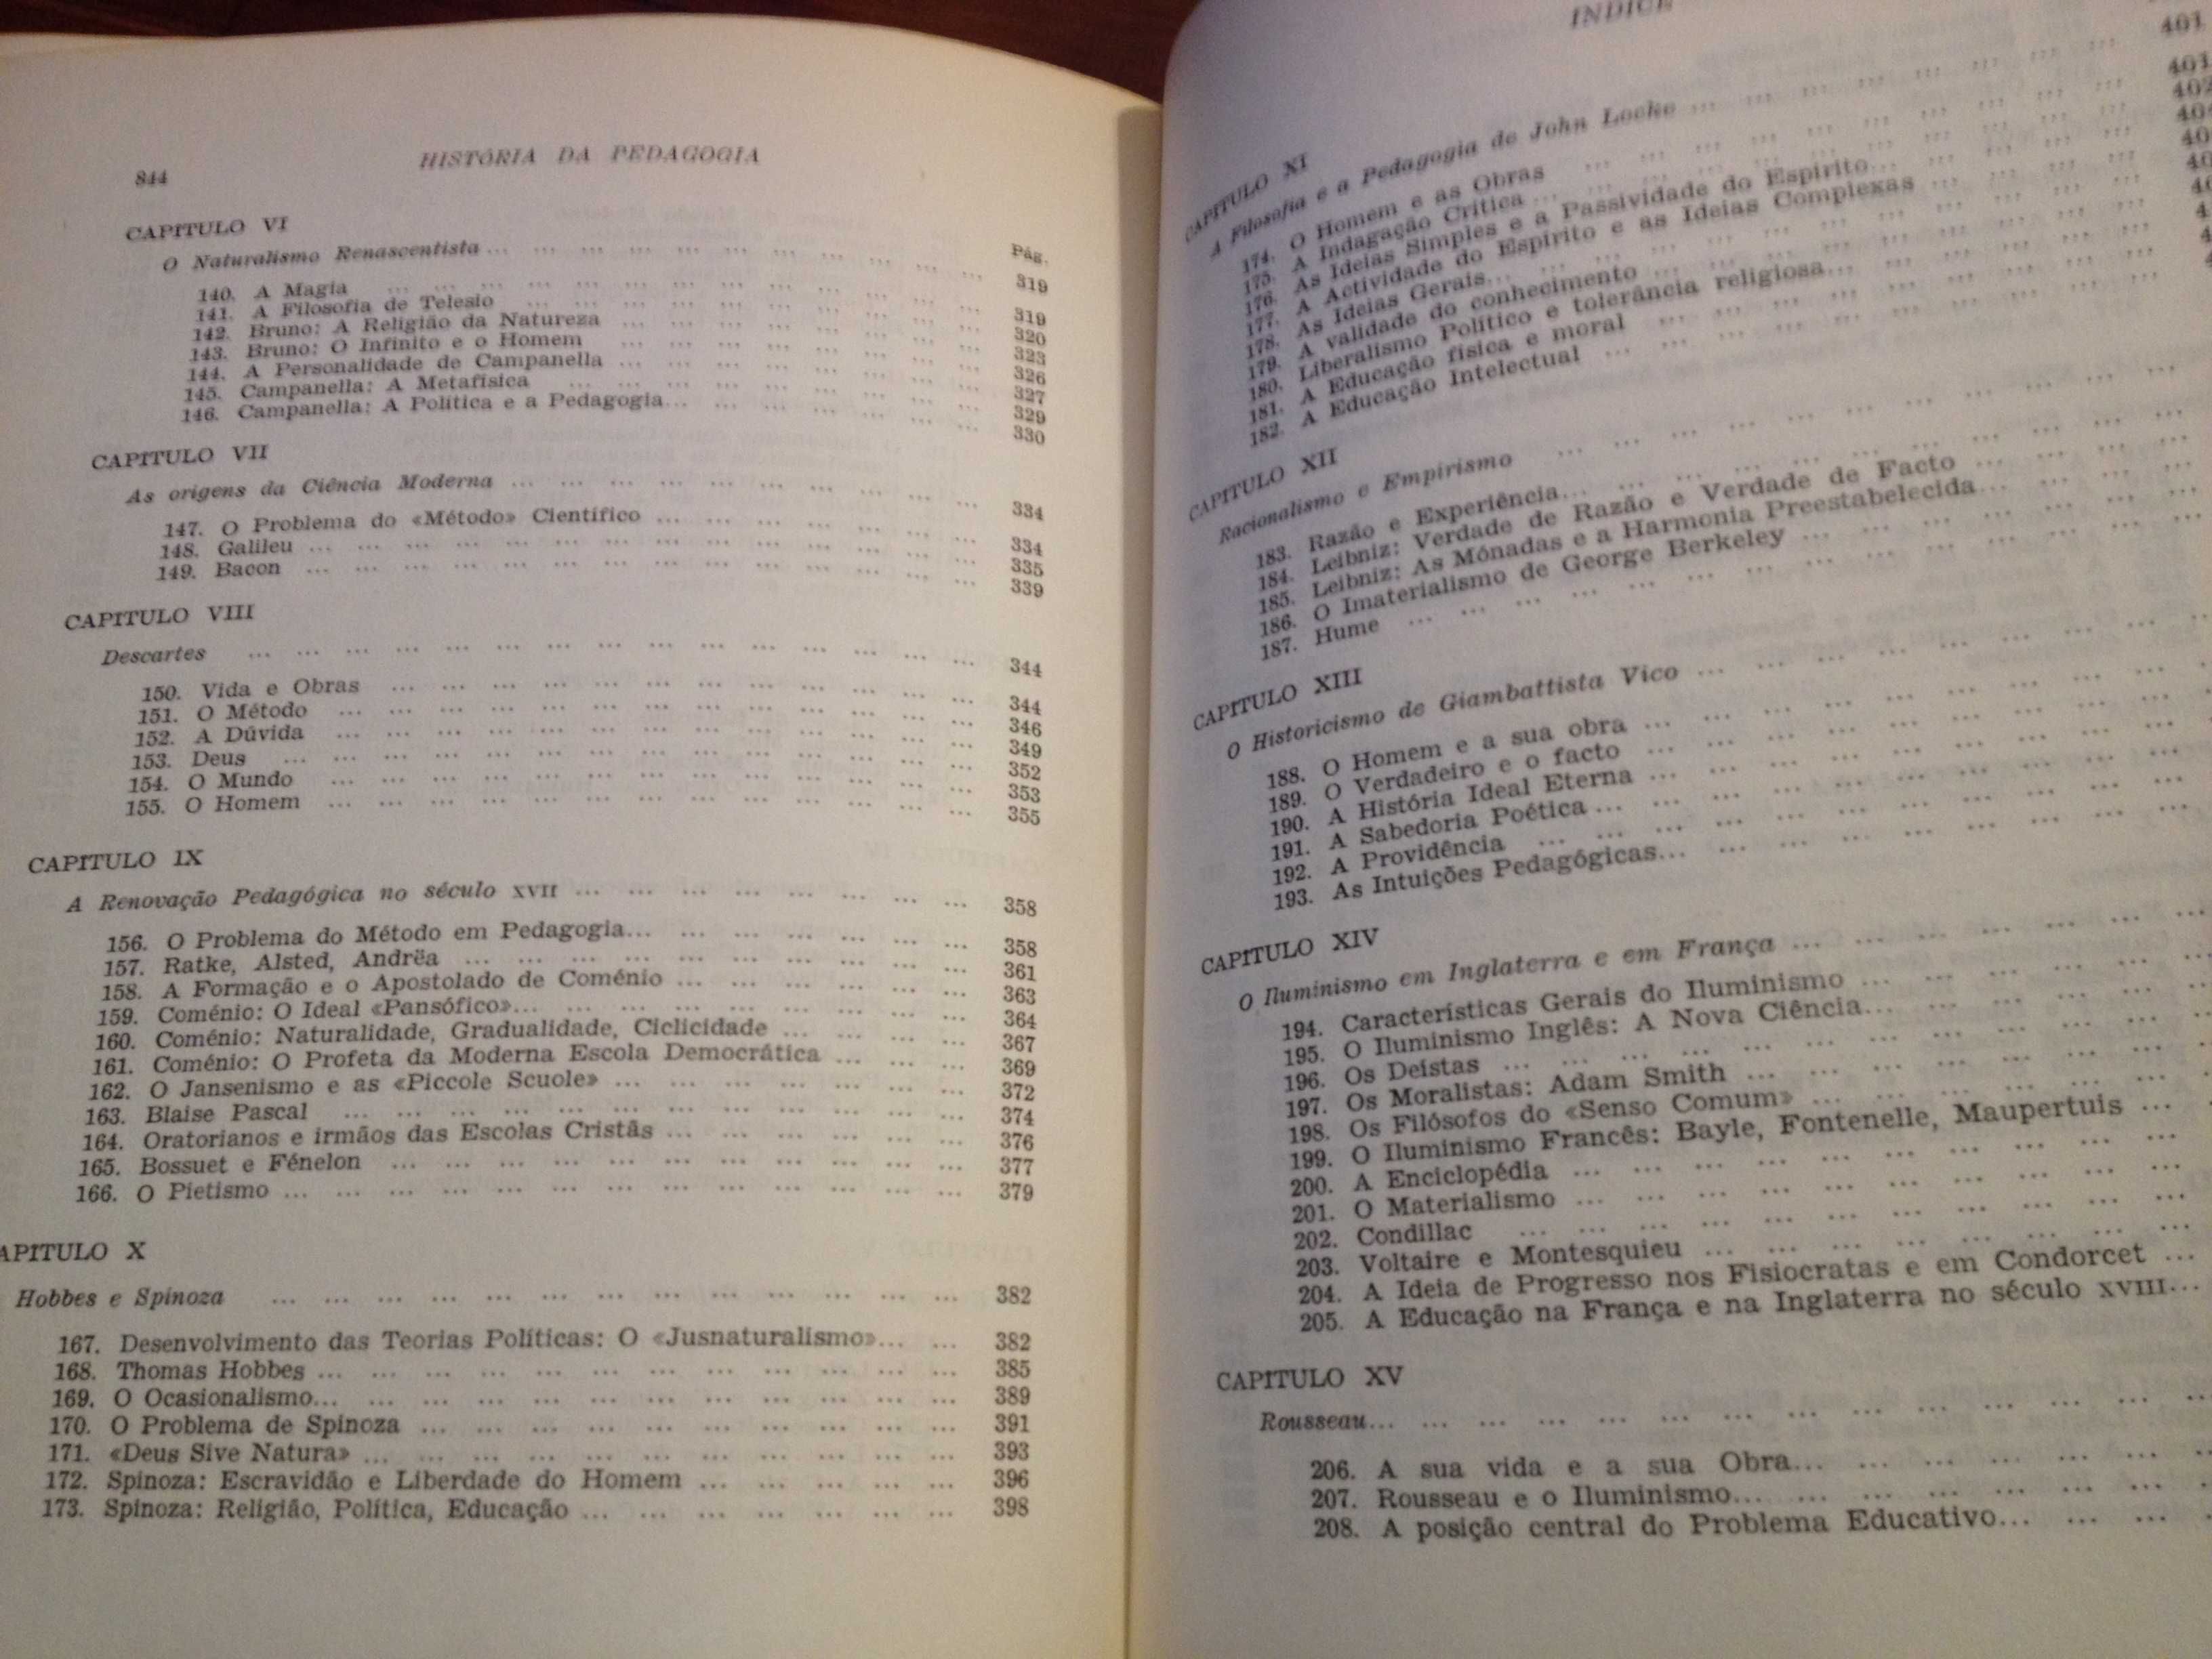 N. Abbagnano e A. Visalberghi - História da Pedagogia Vol. 2